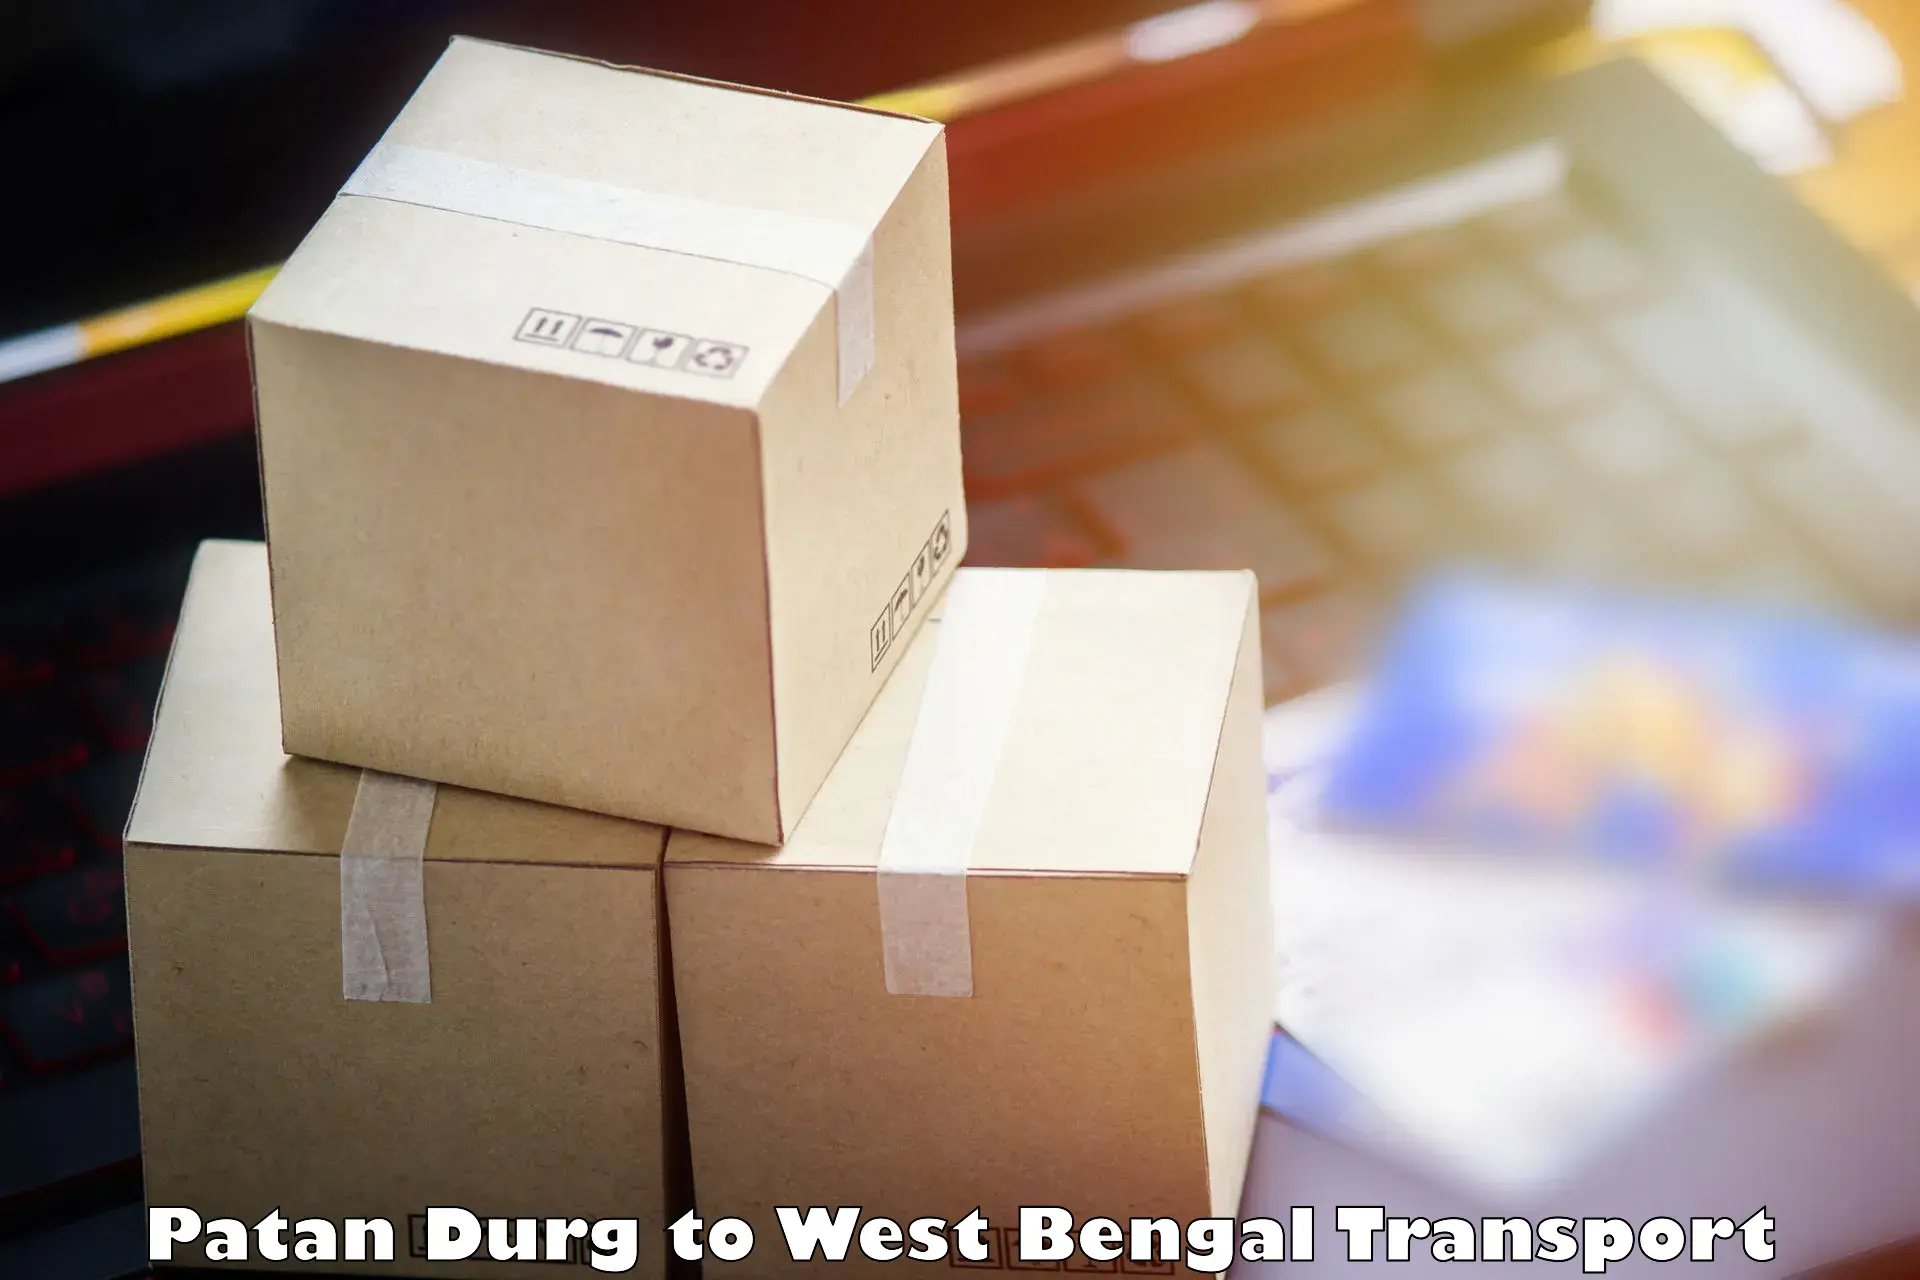 Online transport service Patan Durg to Belda